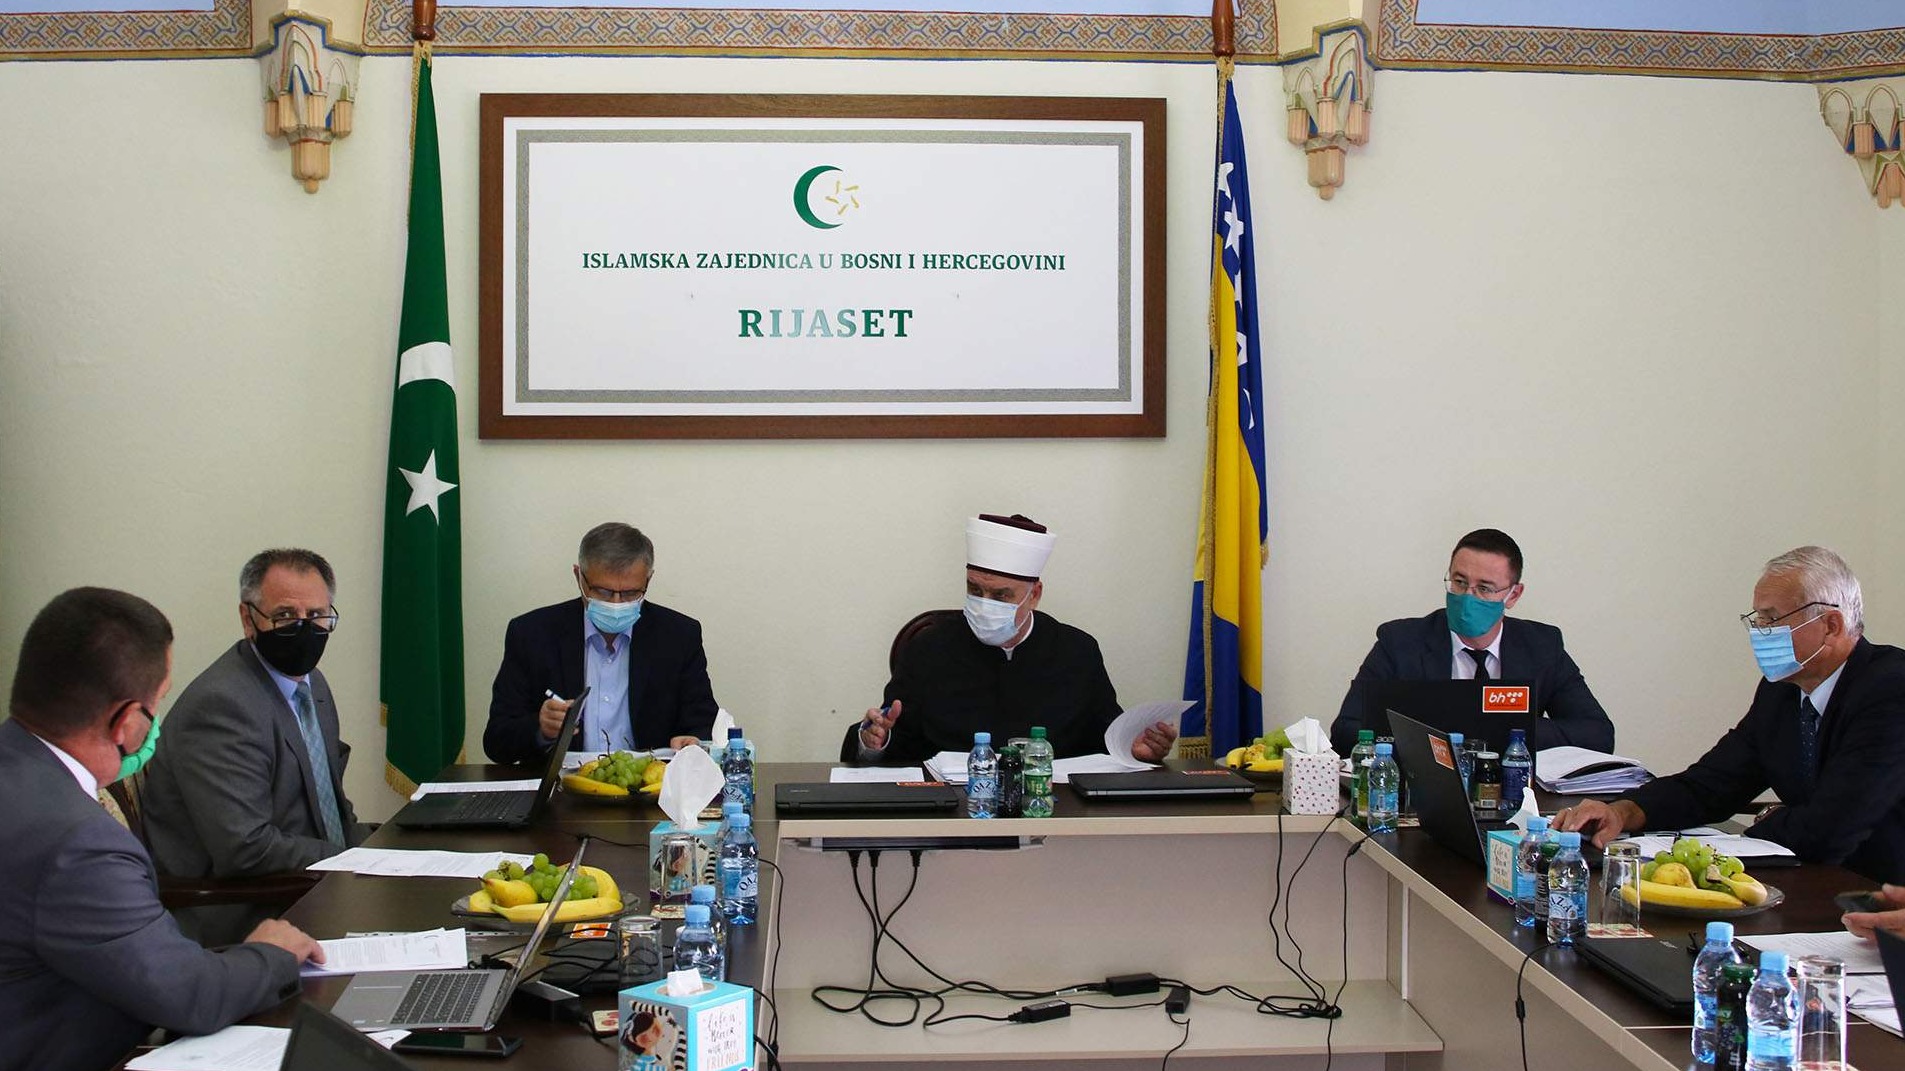 Delegacija IZ u BiH će posjetiti Islamsku zajednicu u Crnoj Gori i tamošnje muslimane